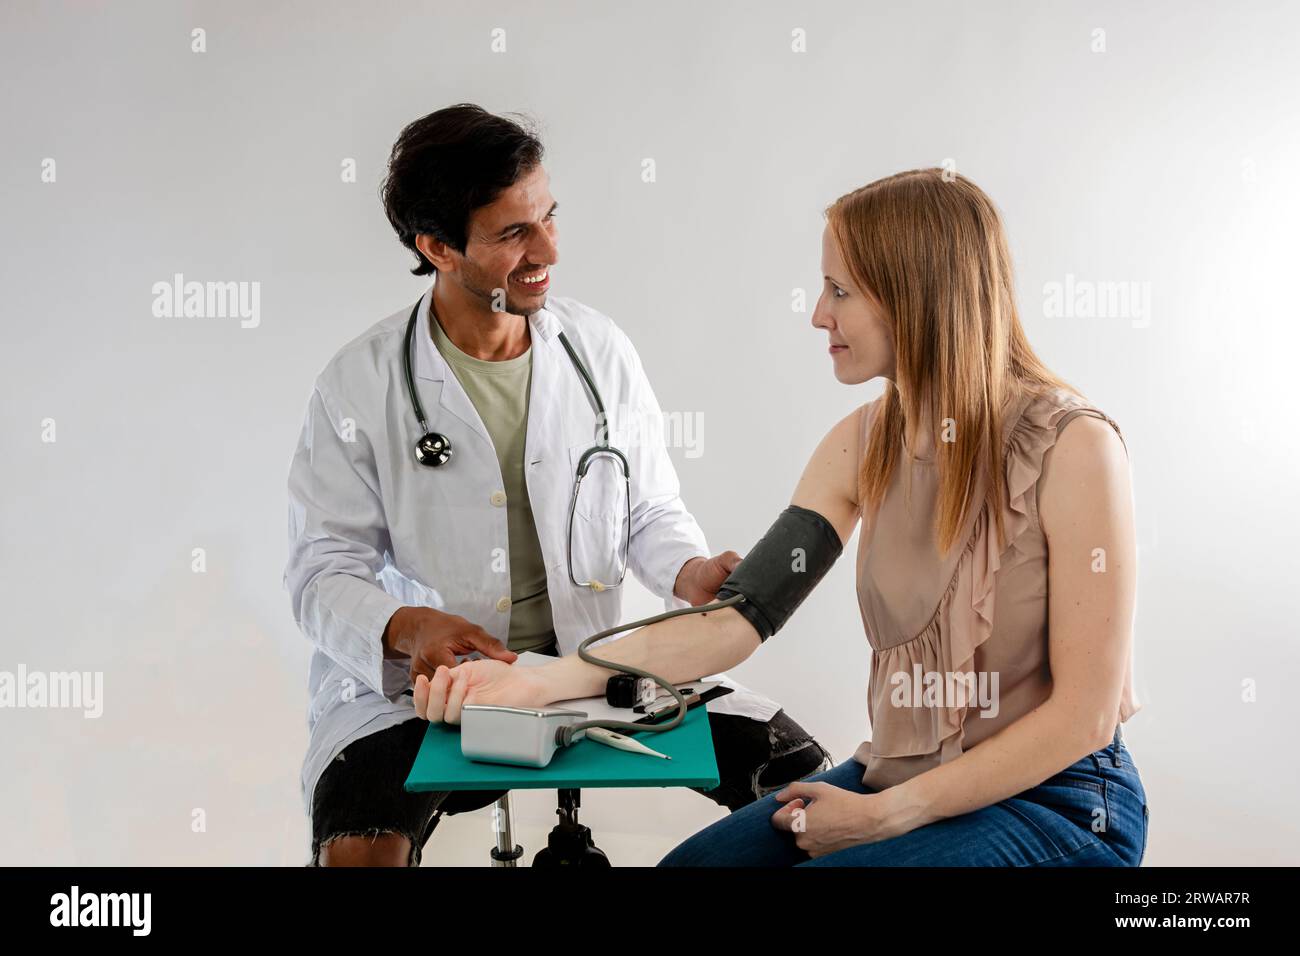 Asiatischer Arzt aus Indien, gekleidet in einem weißen Mantel, der den Blutdruck an einer rothaarigen europäischen Frau misst. Stockfoto